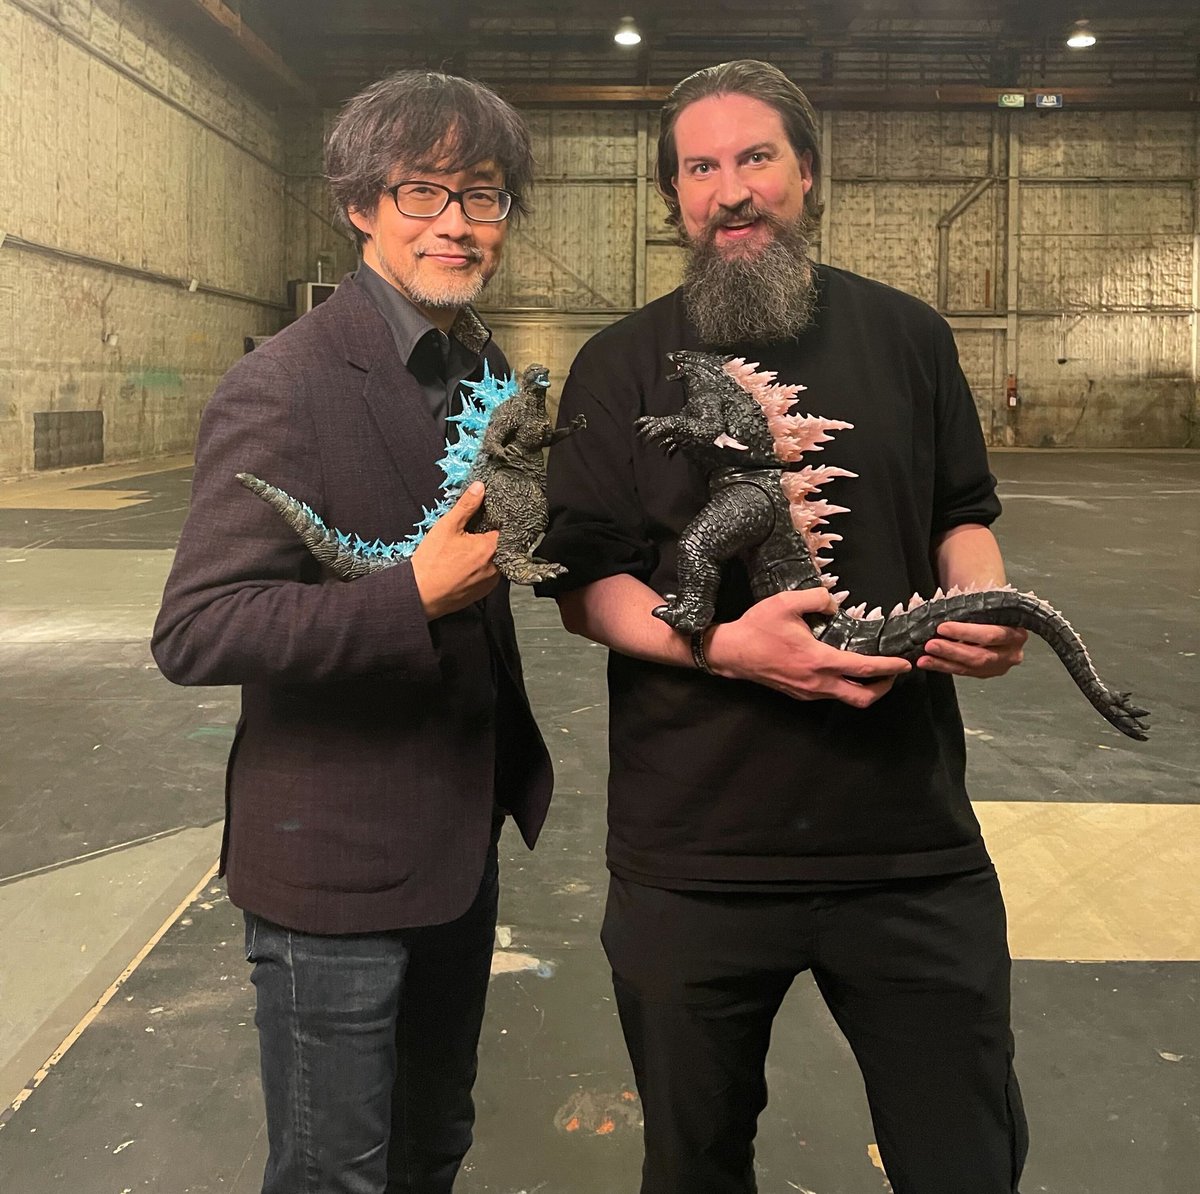 Takashi Yamazaki and Adam Wingard hanging out with their Godzillas. 🩵🩷